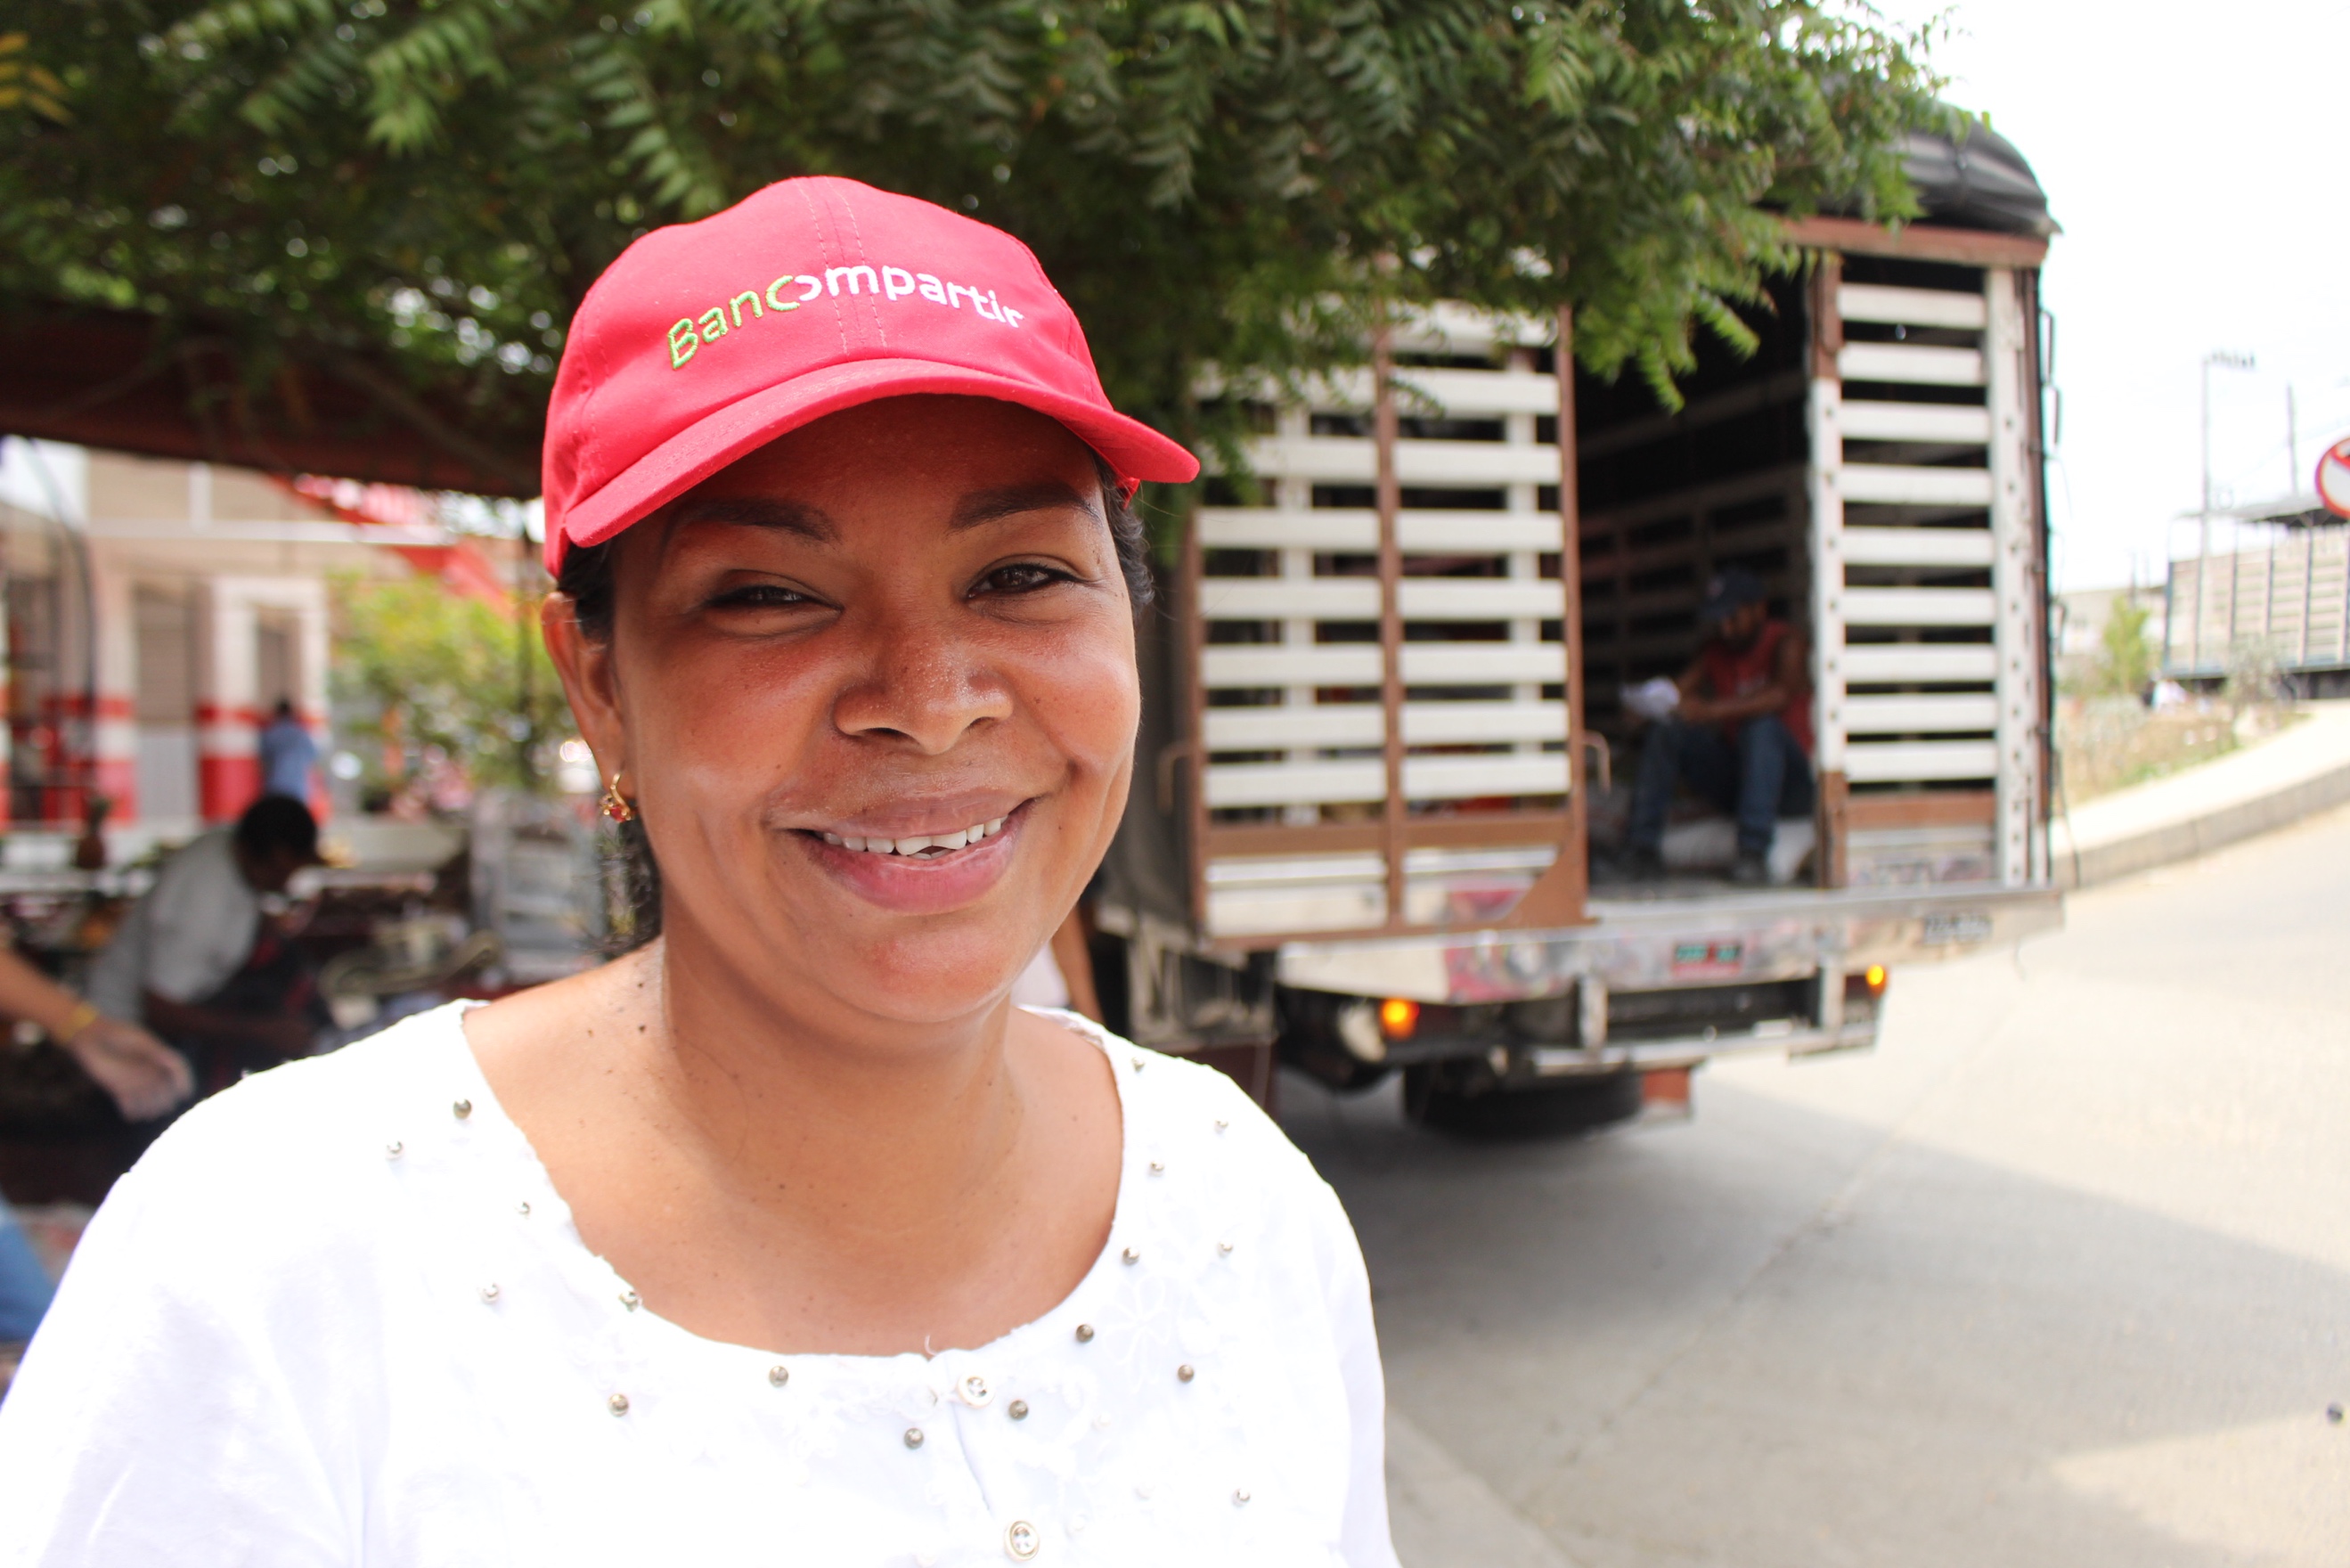  Carmen Cecilia Morales hace parte del programa Soy líder de Bancomparir en Turbaco, Bolívar